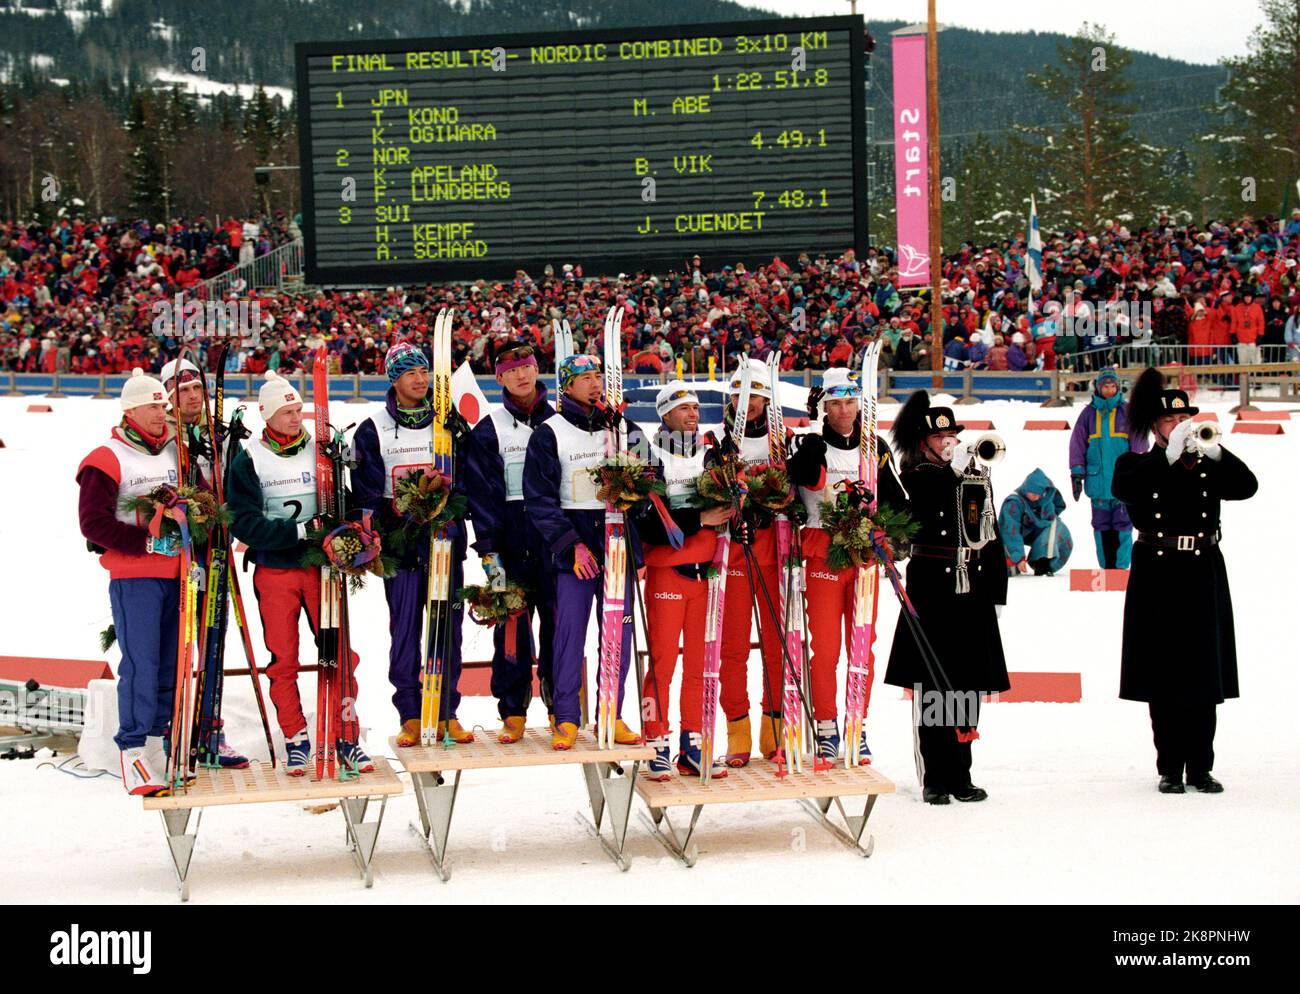 Lillehammer 19940224 Olimpiadi invernali a Lillehammer. Concorso di squadra combinato. Cerimonia dei fiori allo stadio di sci dopo la grondaia. Da v. la squadra norvegese che ha preso l'argento. Da v. Bjarte Engen Vik, Fred Børre Lundberg e Knut Tore APELY. Nel mezzo, il Giappone che ha preso l'oro. Nella squadra, T. Kono, M. Abe e K. Ogiwara. Th. La Svizzera che ha preso il bronzo. In squadra è andato H. Kempf, J.Y. Cuendez e A. Schaad. I soffiatori di tromba di sua Maestà la Guardia del Re suonano fanfares. Foto: Bjørn Sigurdsøn / NTB / NTB Foto Stock